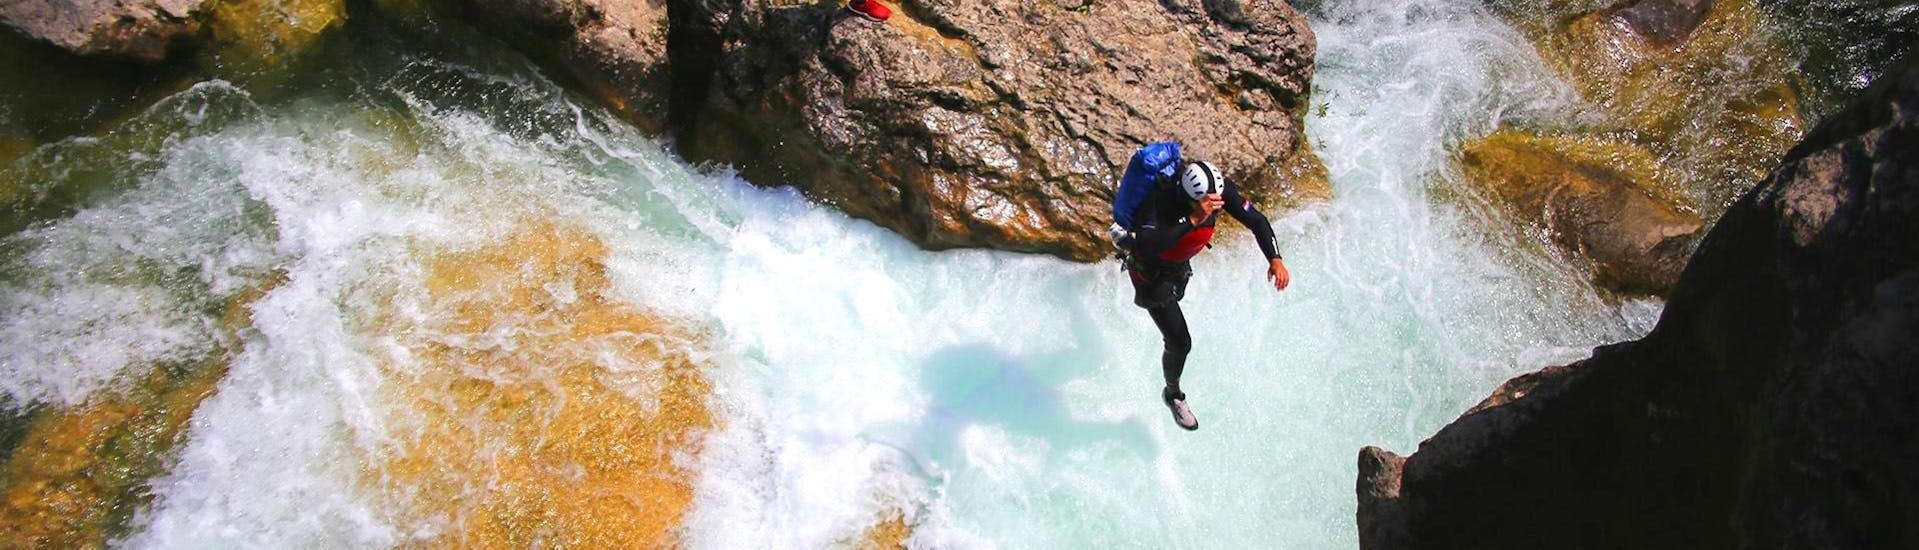 Een canyoning gids van Adventure Dalmatia springt in het water tijdens de Canyoning voor Beginners bij de Cetina Rivier.